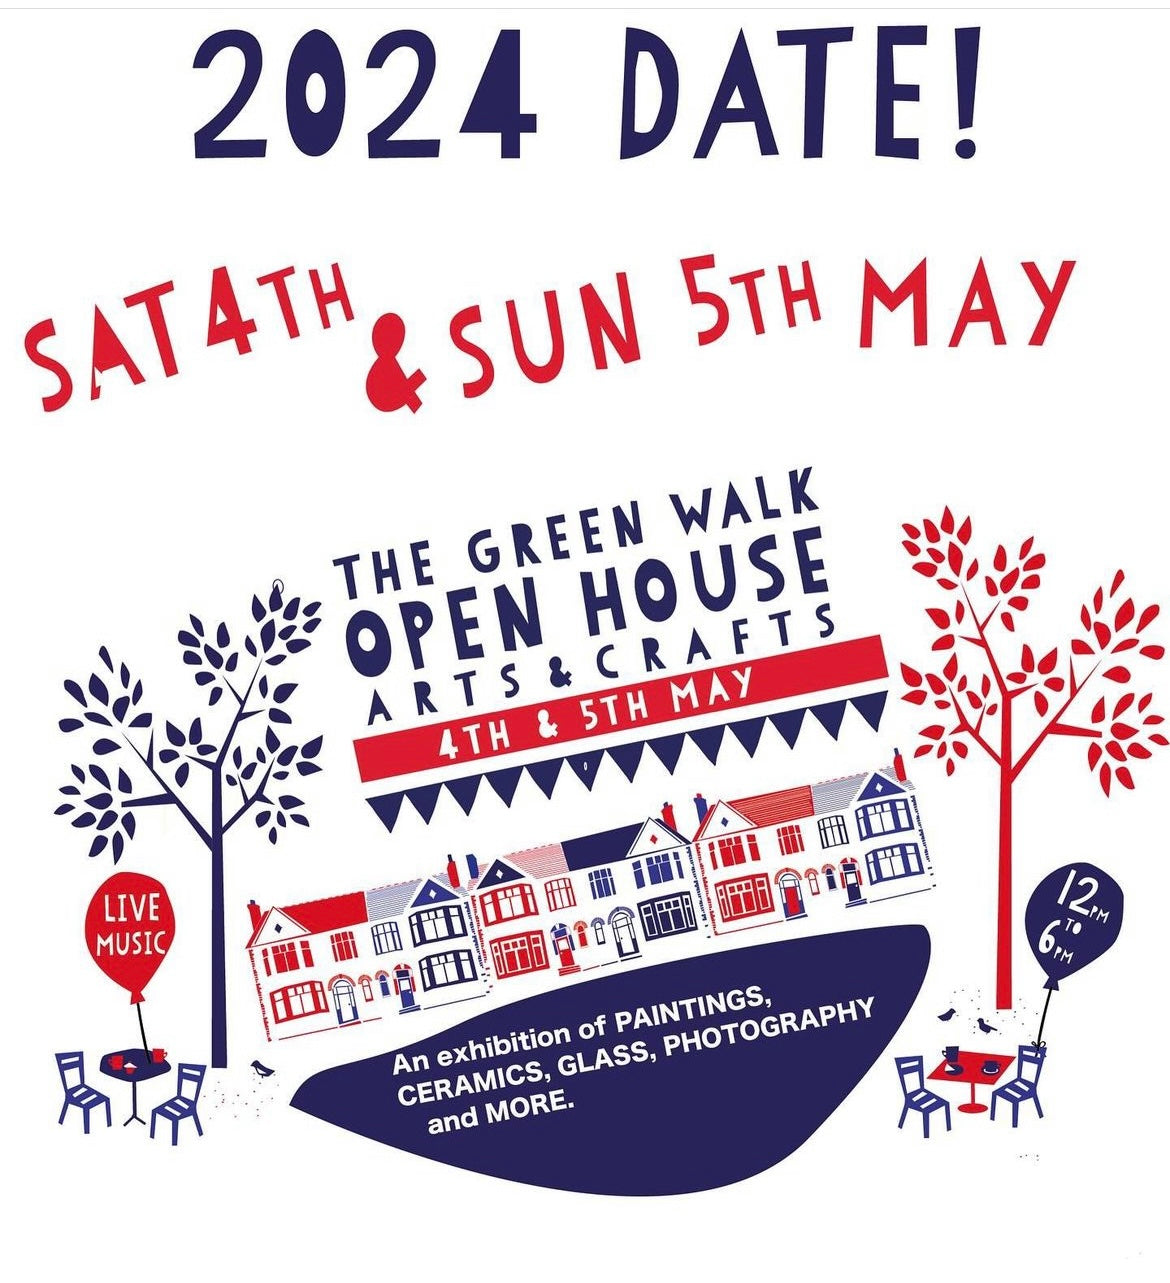 Green Walk Open House Arts & Craft Weekend 2024